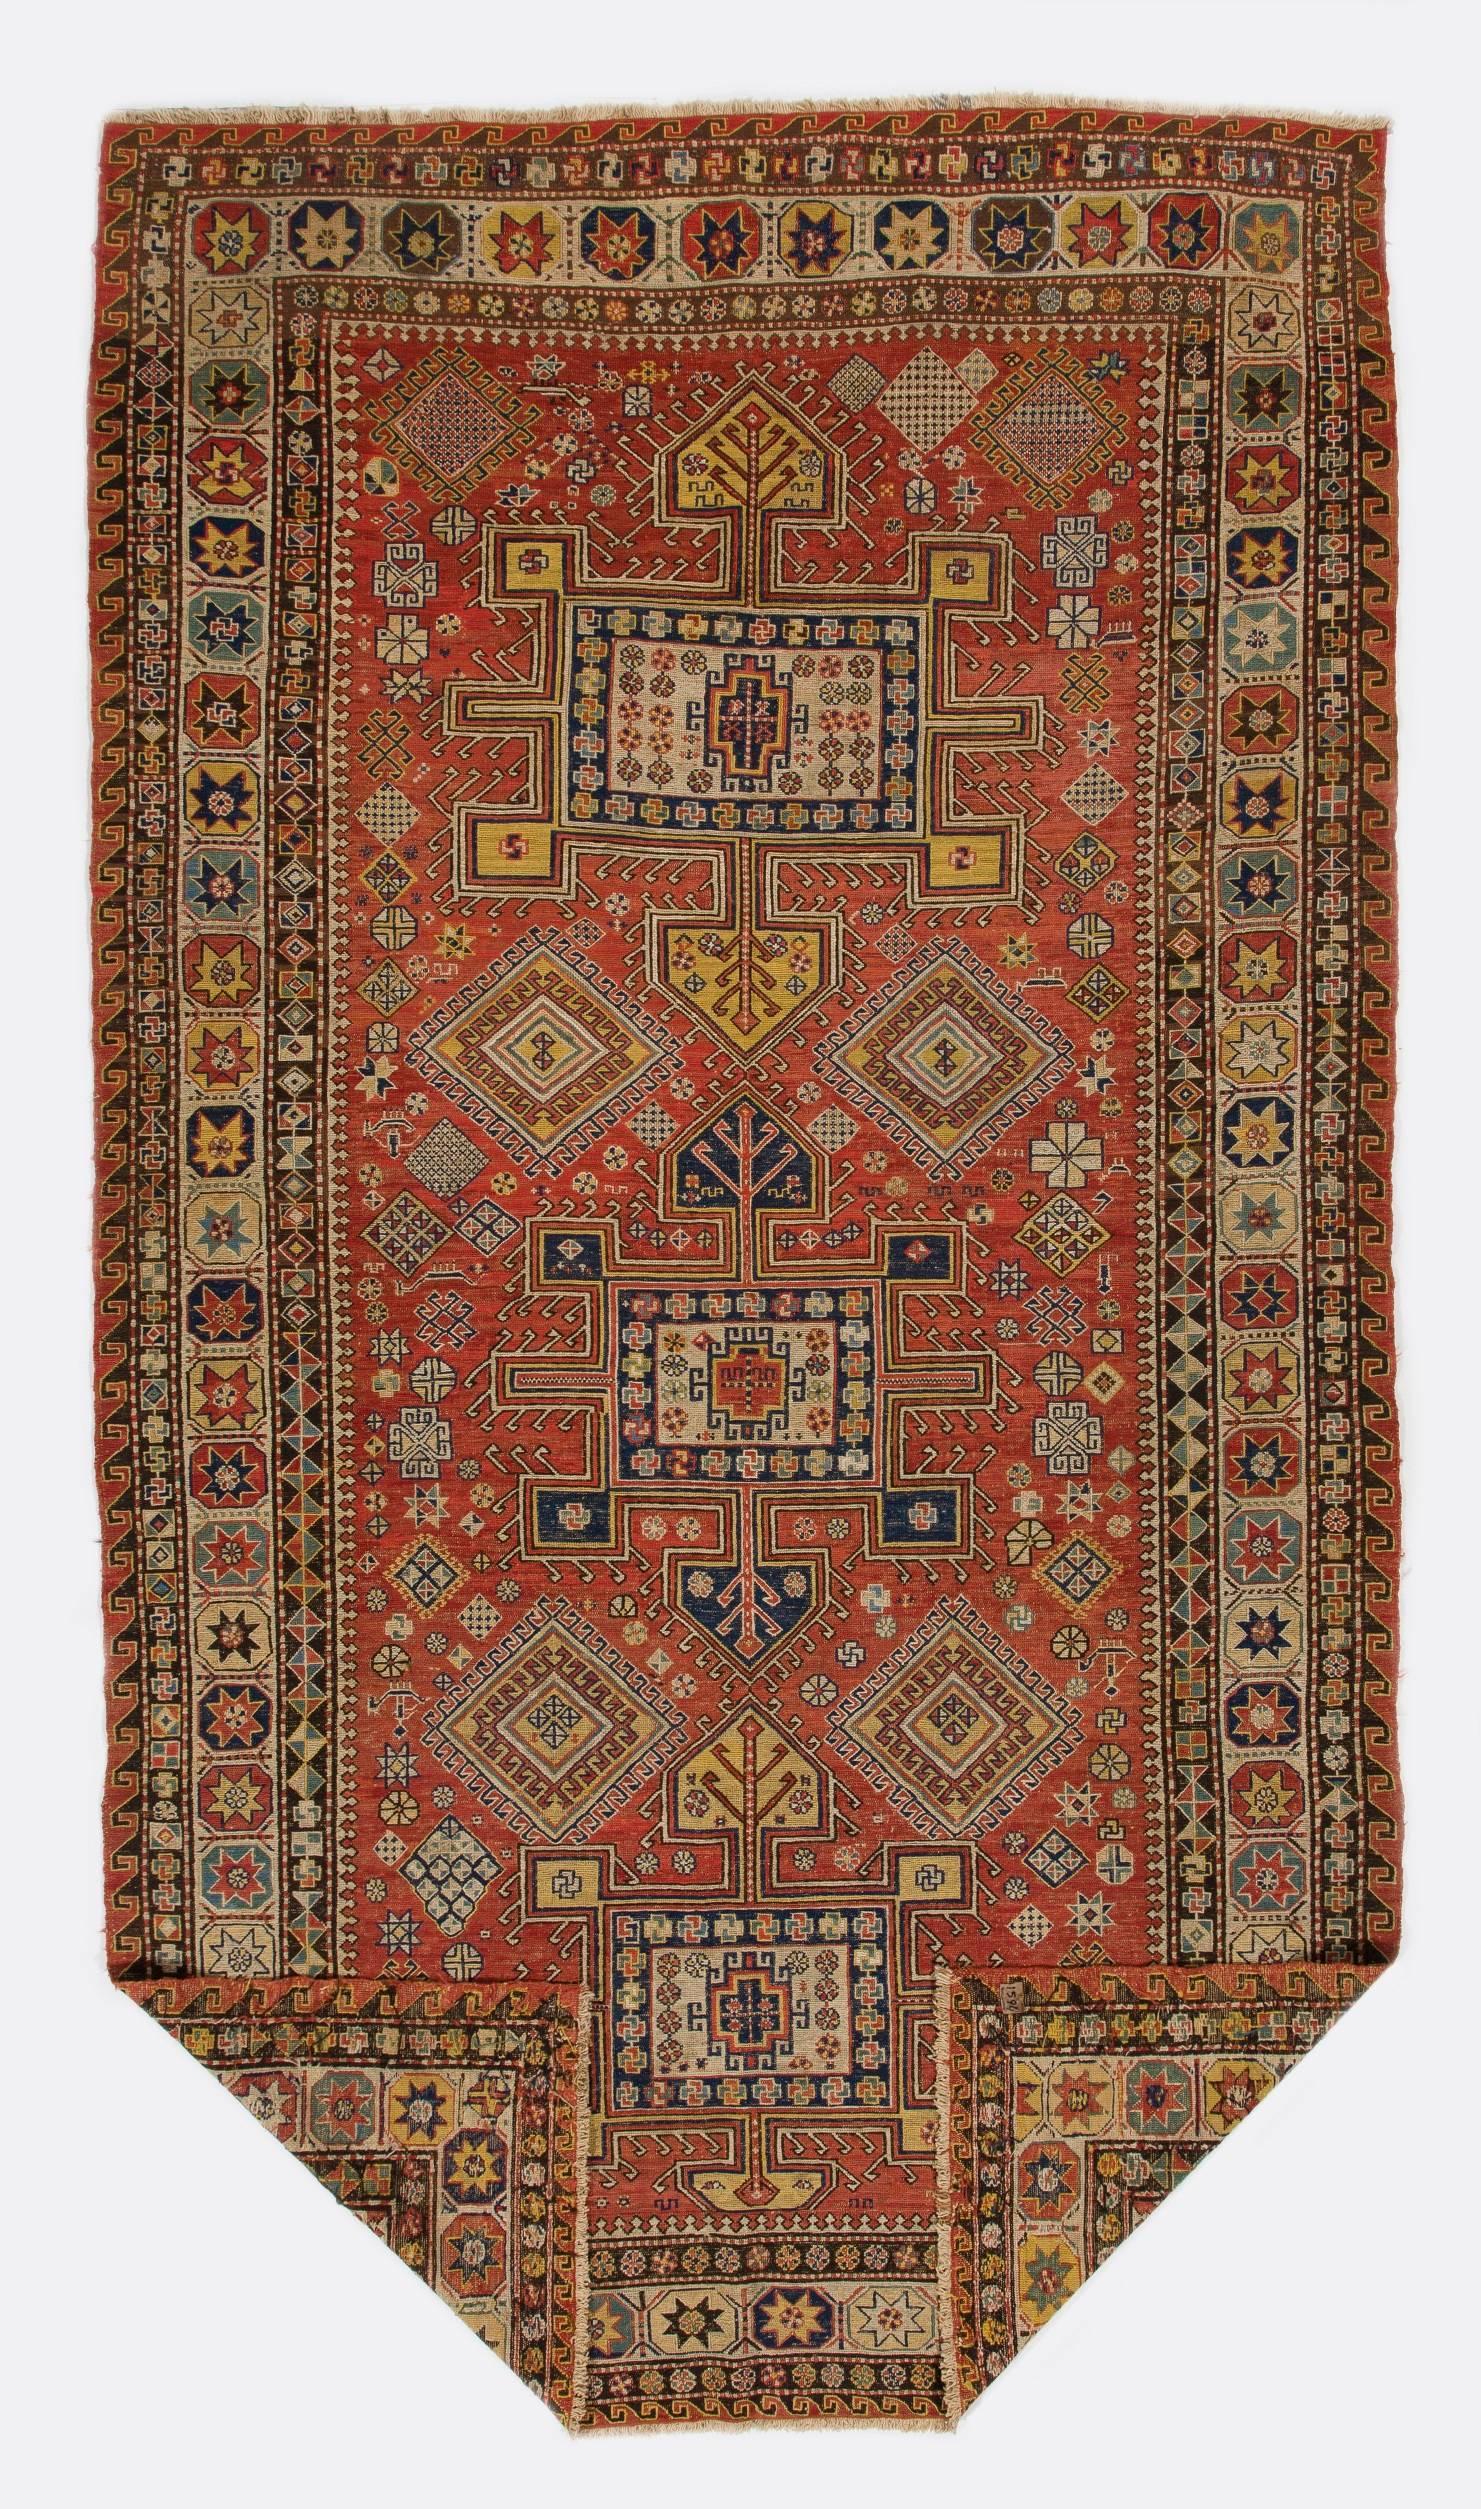 Soumak (auch Soumakh, Sumak, Sumac oder Soumac genannt) ist eine Webtechnik, bei der kräftige und dekorative Textilien gewebt werden, die als Teppiche und Haushaltstaschen verwendet werden. Soumak ist eine Art Flachgewebe, das dem Kilim etwas